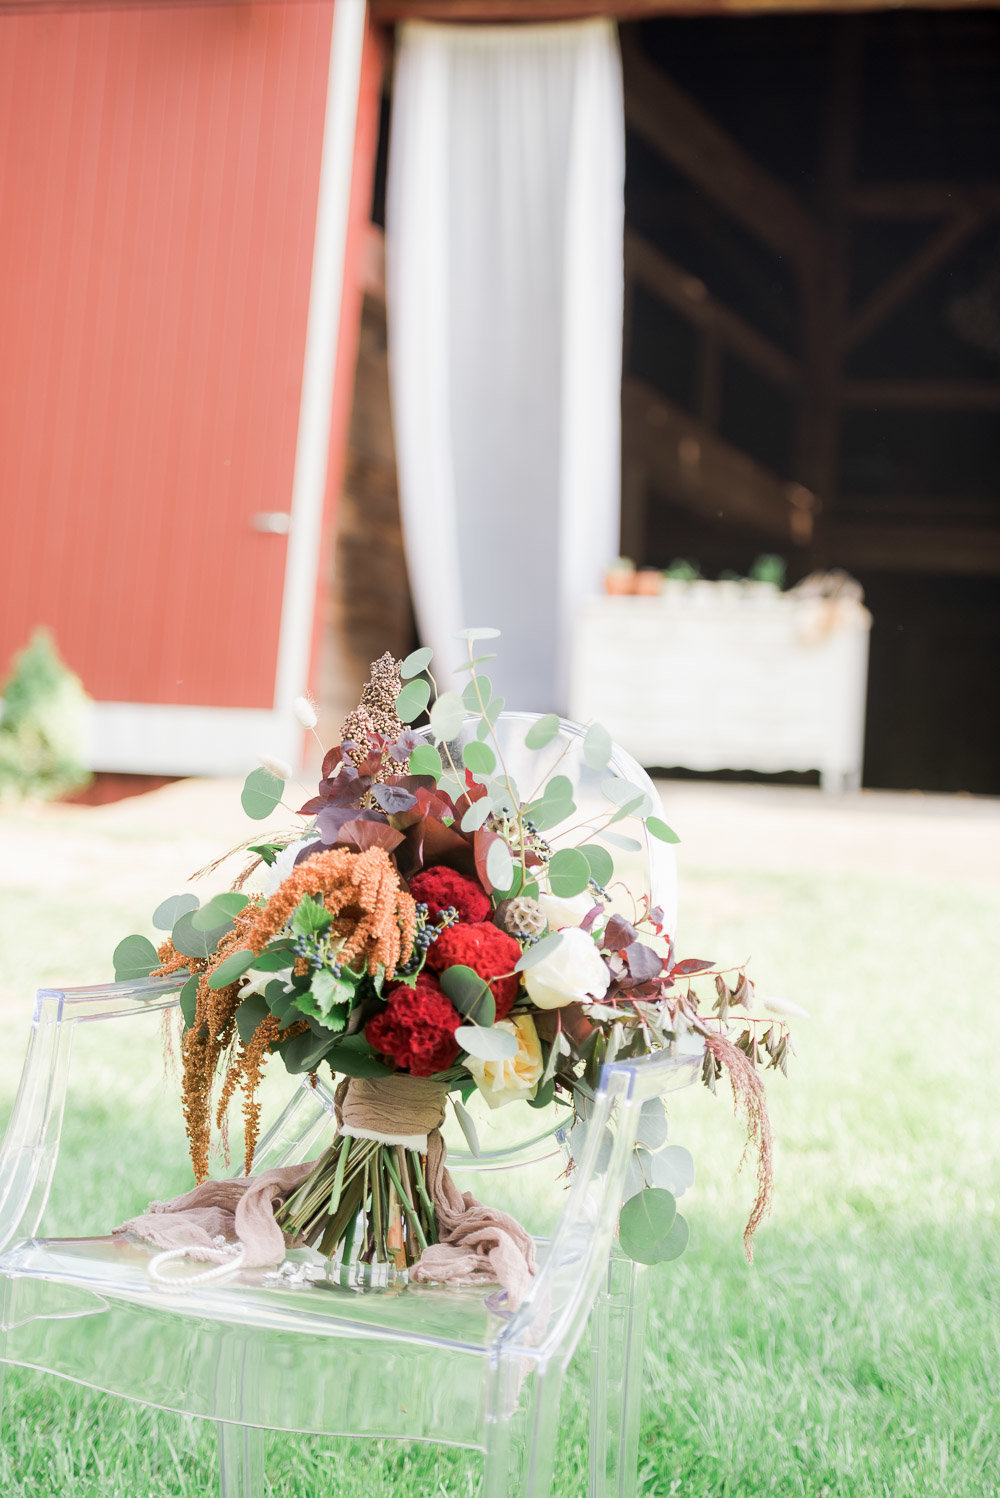 Wedding photographer got a close-up of a flower bouquet on a chair